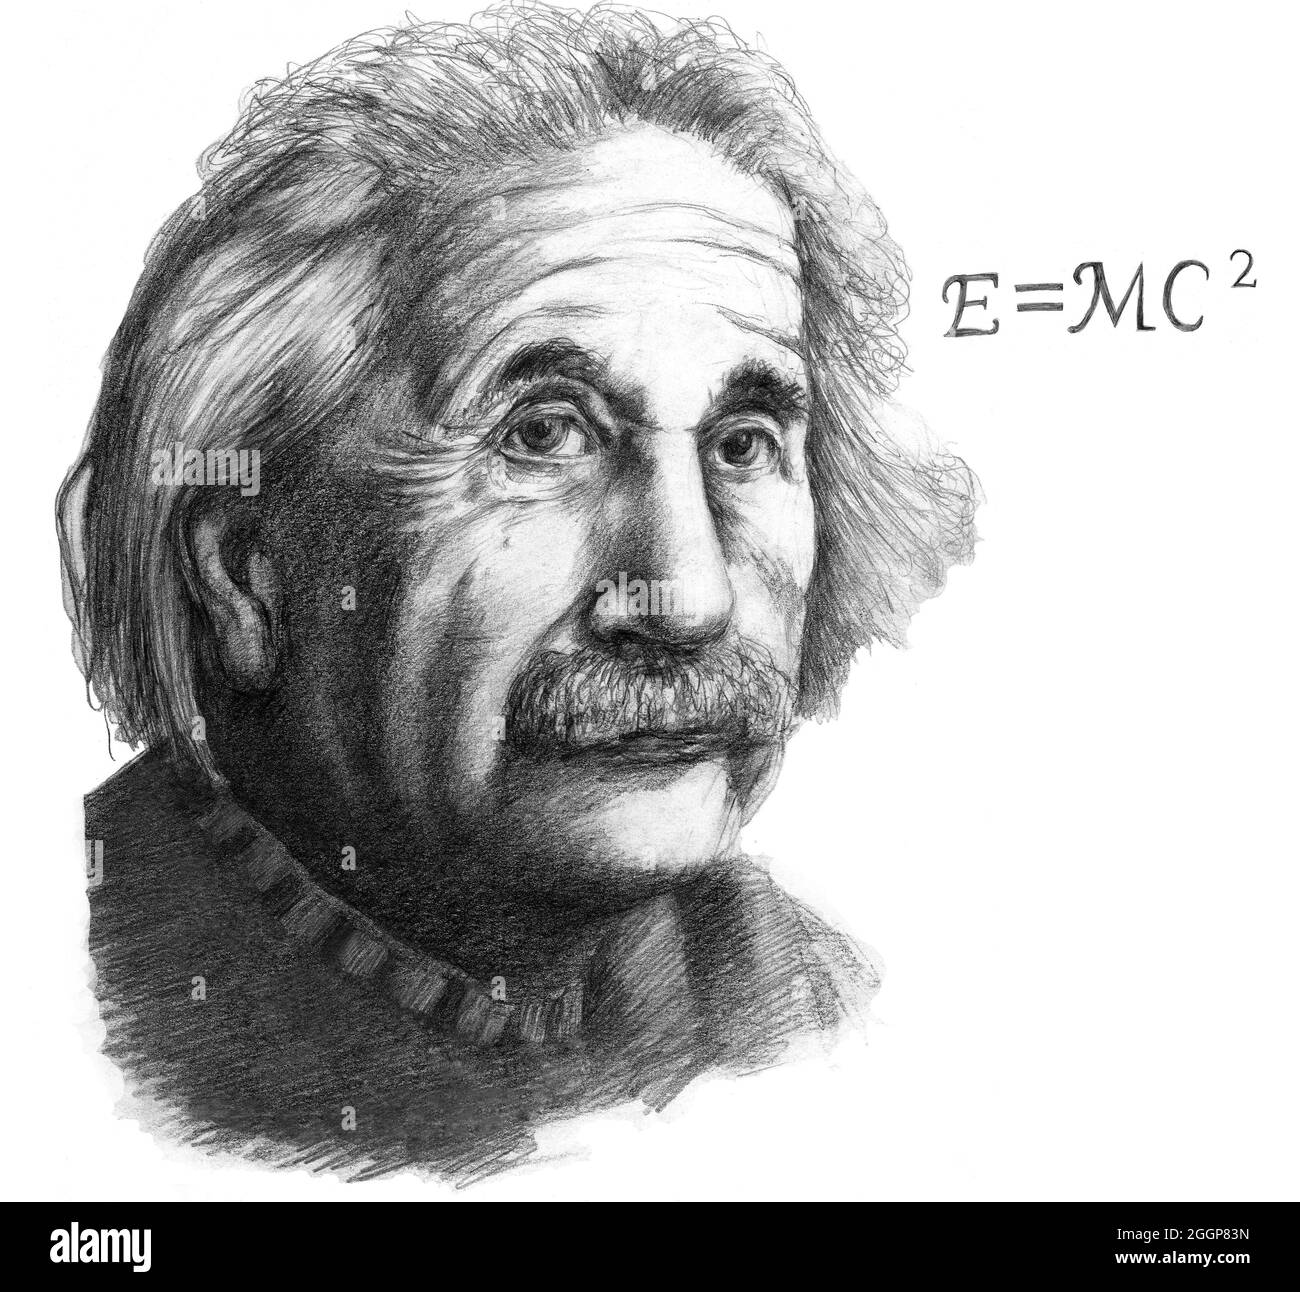 Albert Einstein (14. März 1879 - 18. April 1955) war ein in Deutschland geborener theoretischer Physiker. Stockfoto